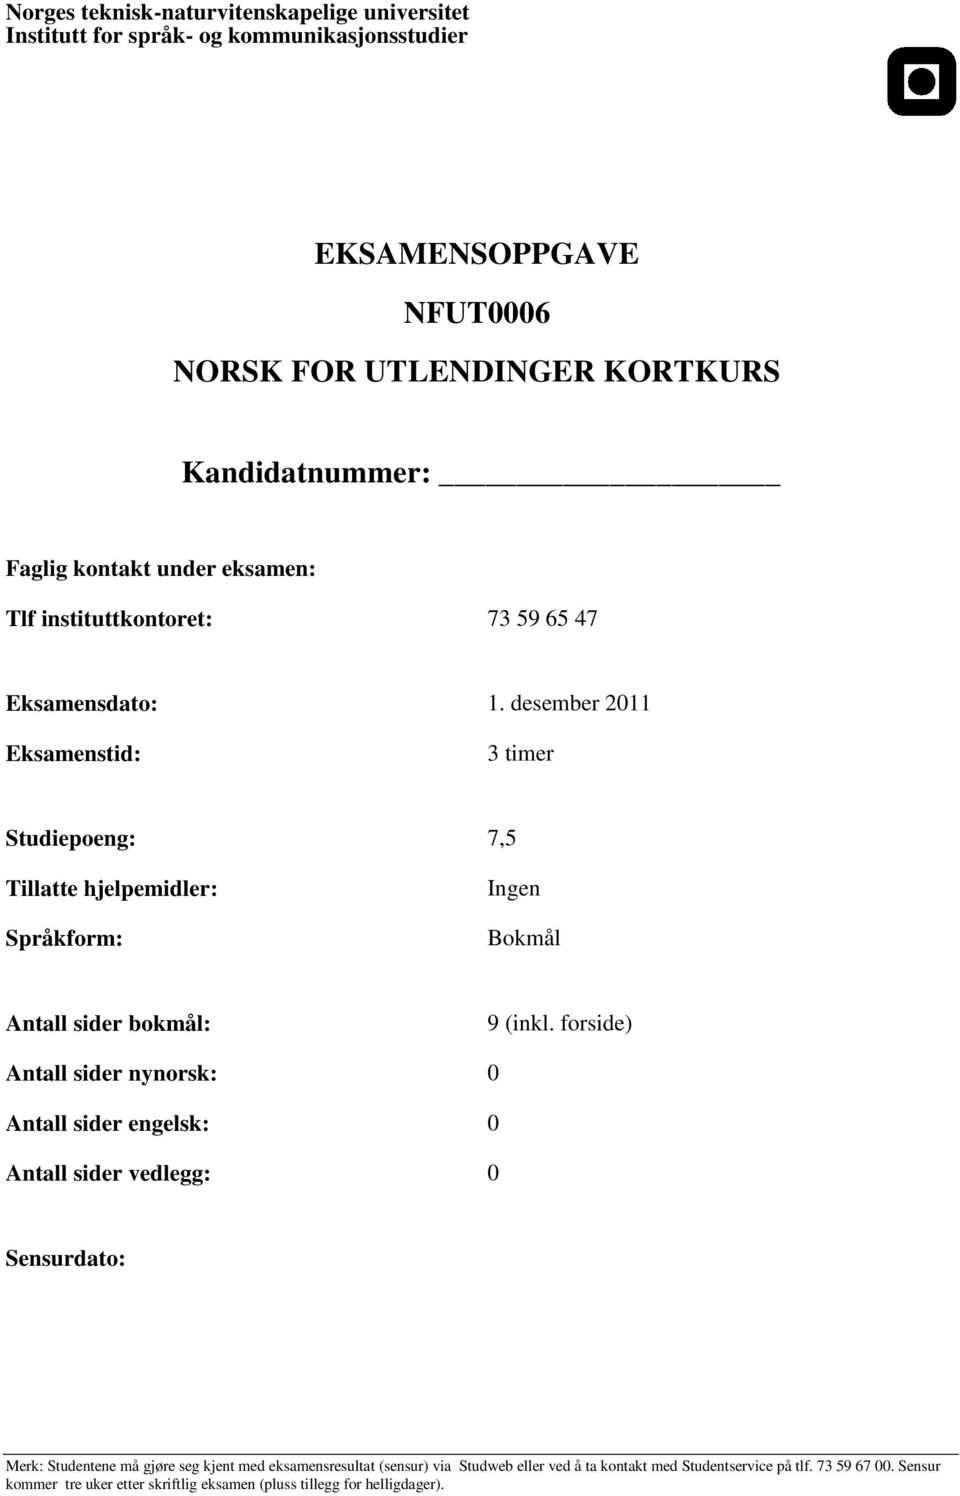 forside) Antall sider nynorsk: 0 Antall sider engelsk: 0 Antall sider vedlegg: 0 Sensurdato: Merk: Studentene må gjøre seg kjent med